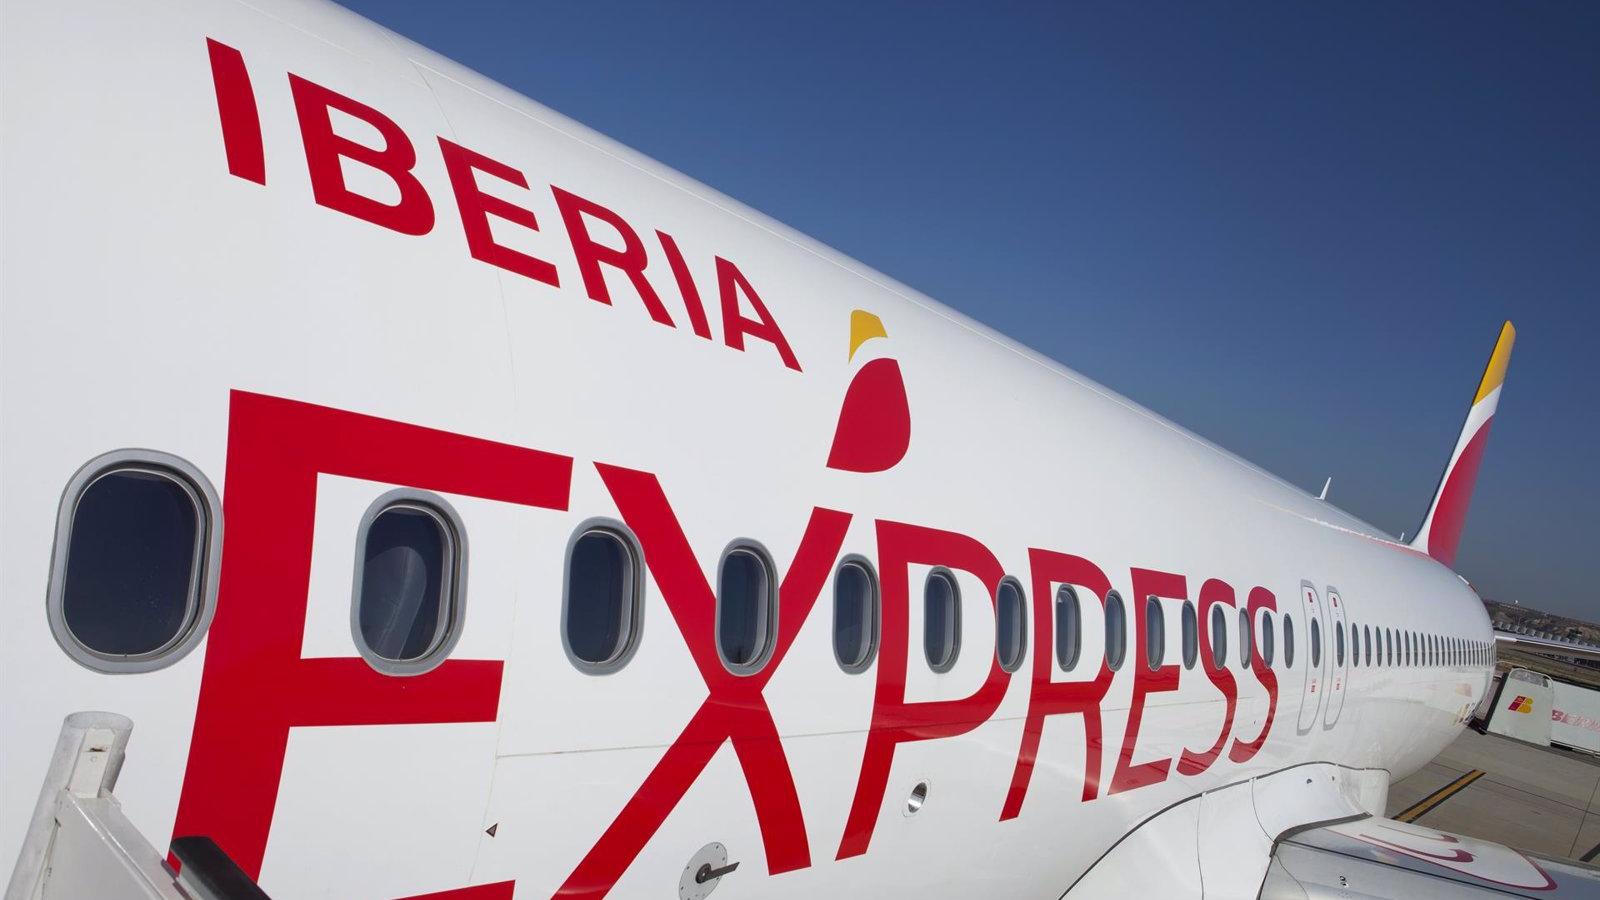 Iberia Express ha cancelado 12 vuelos entre los días 28 y 30 de agosto para 